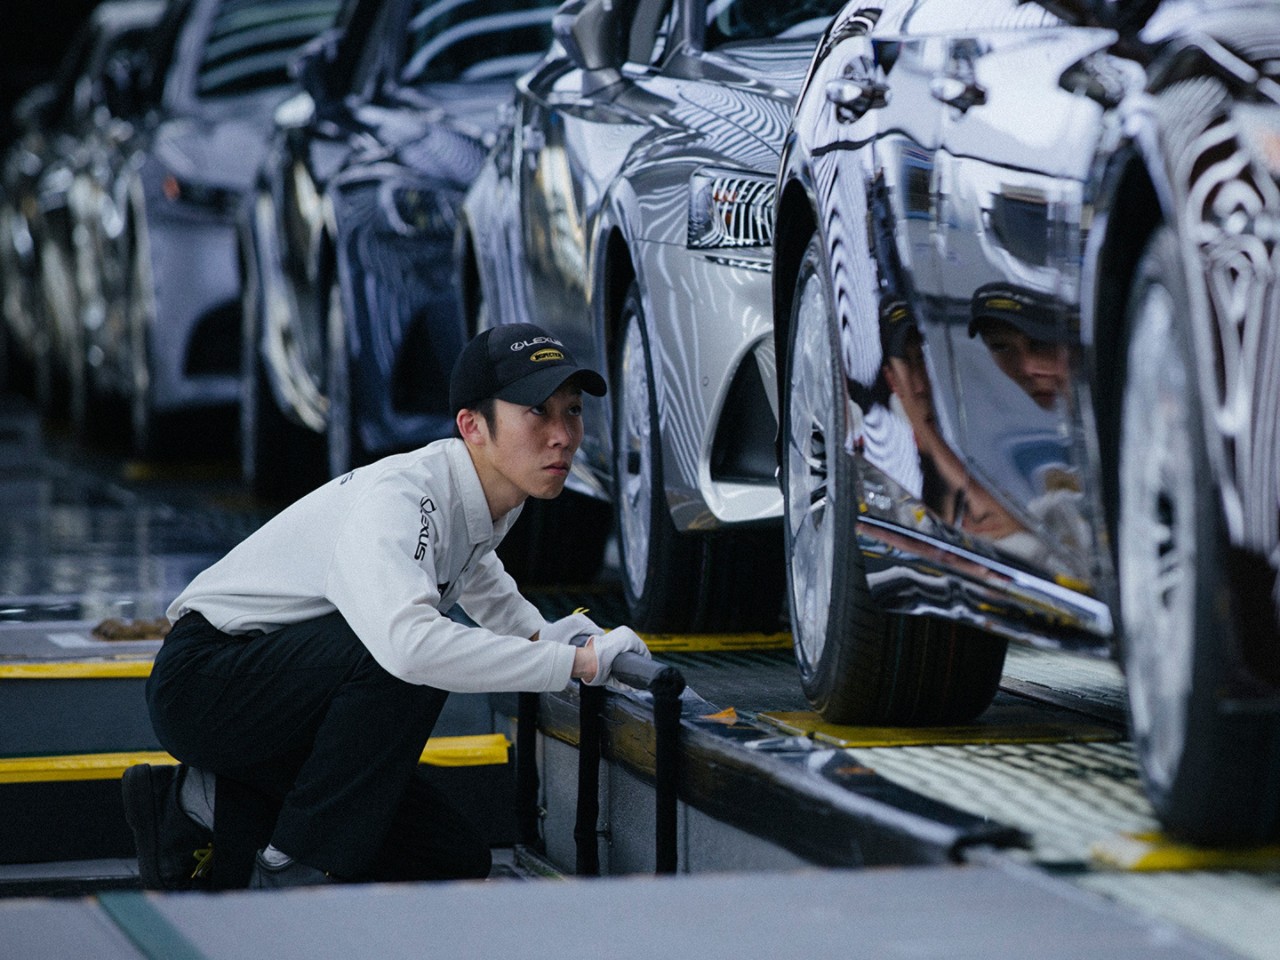 A Lexus mechanic next to an assembly line